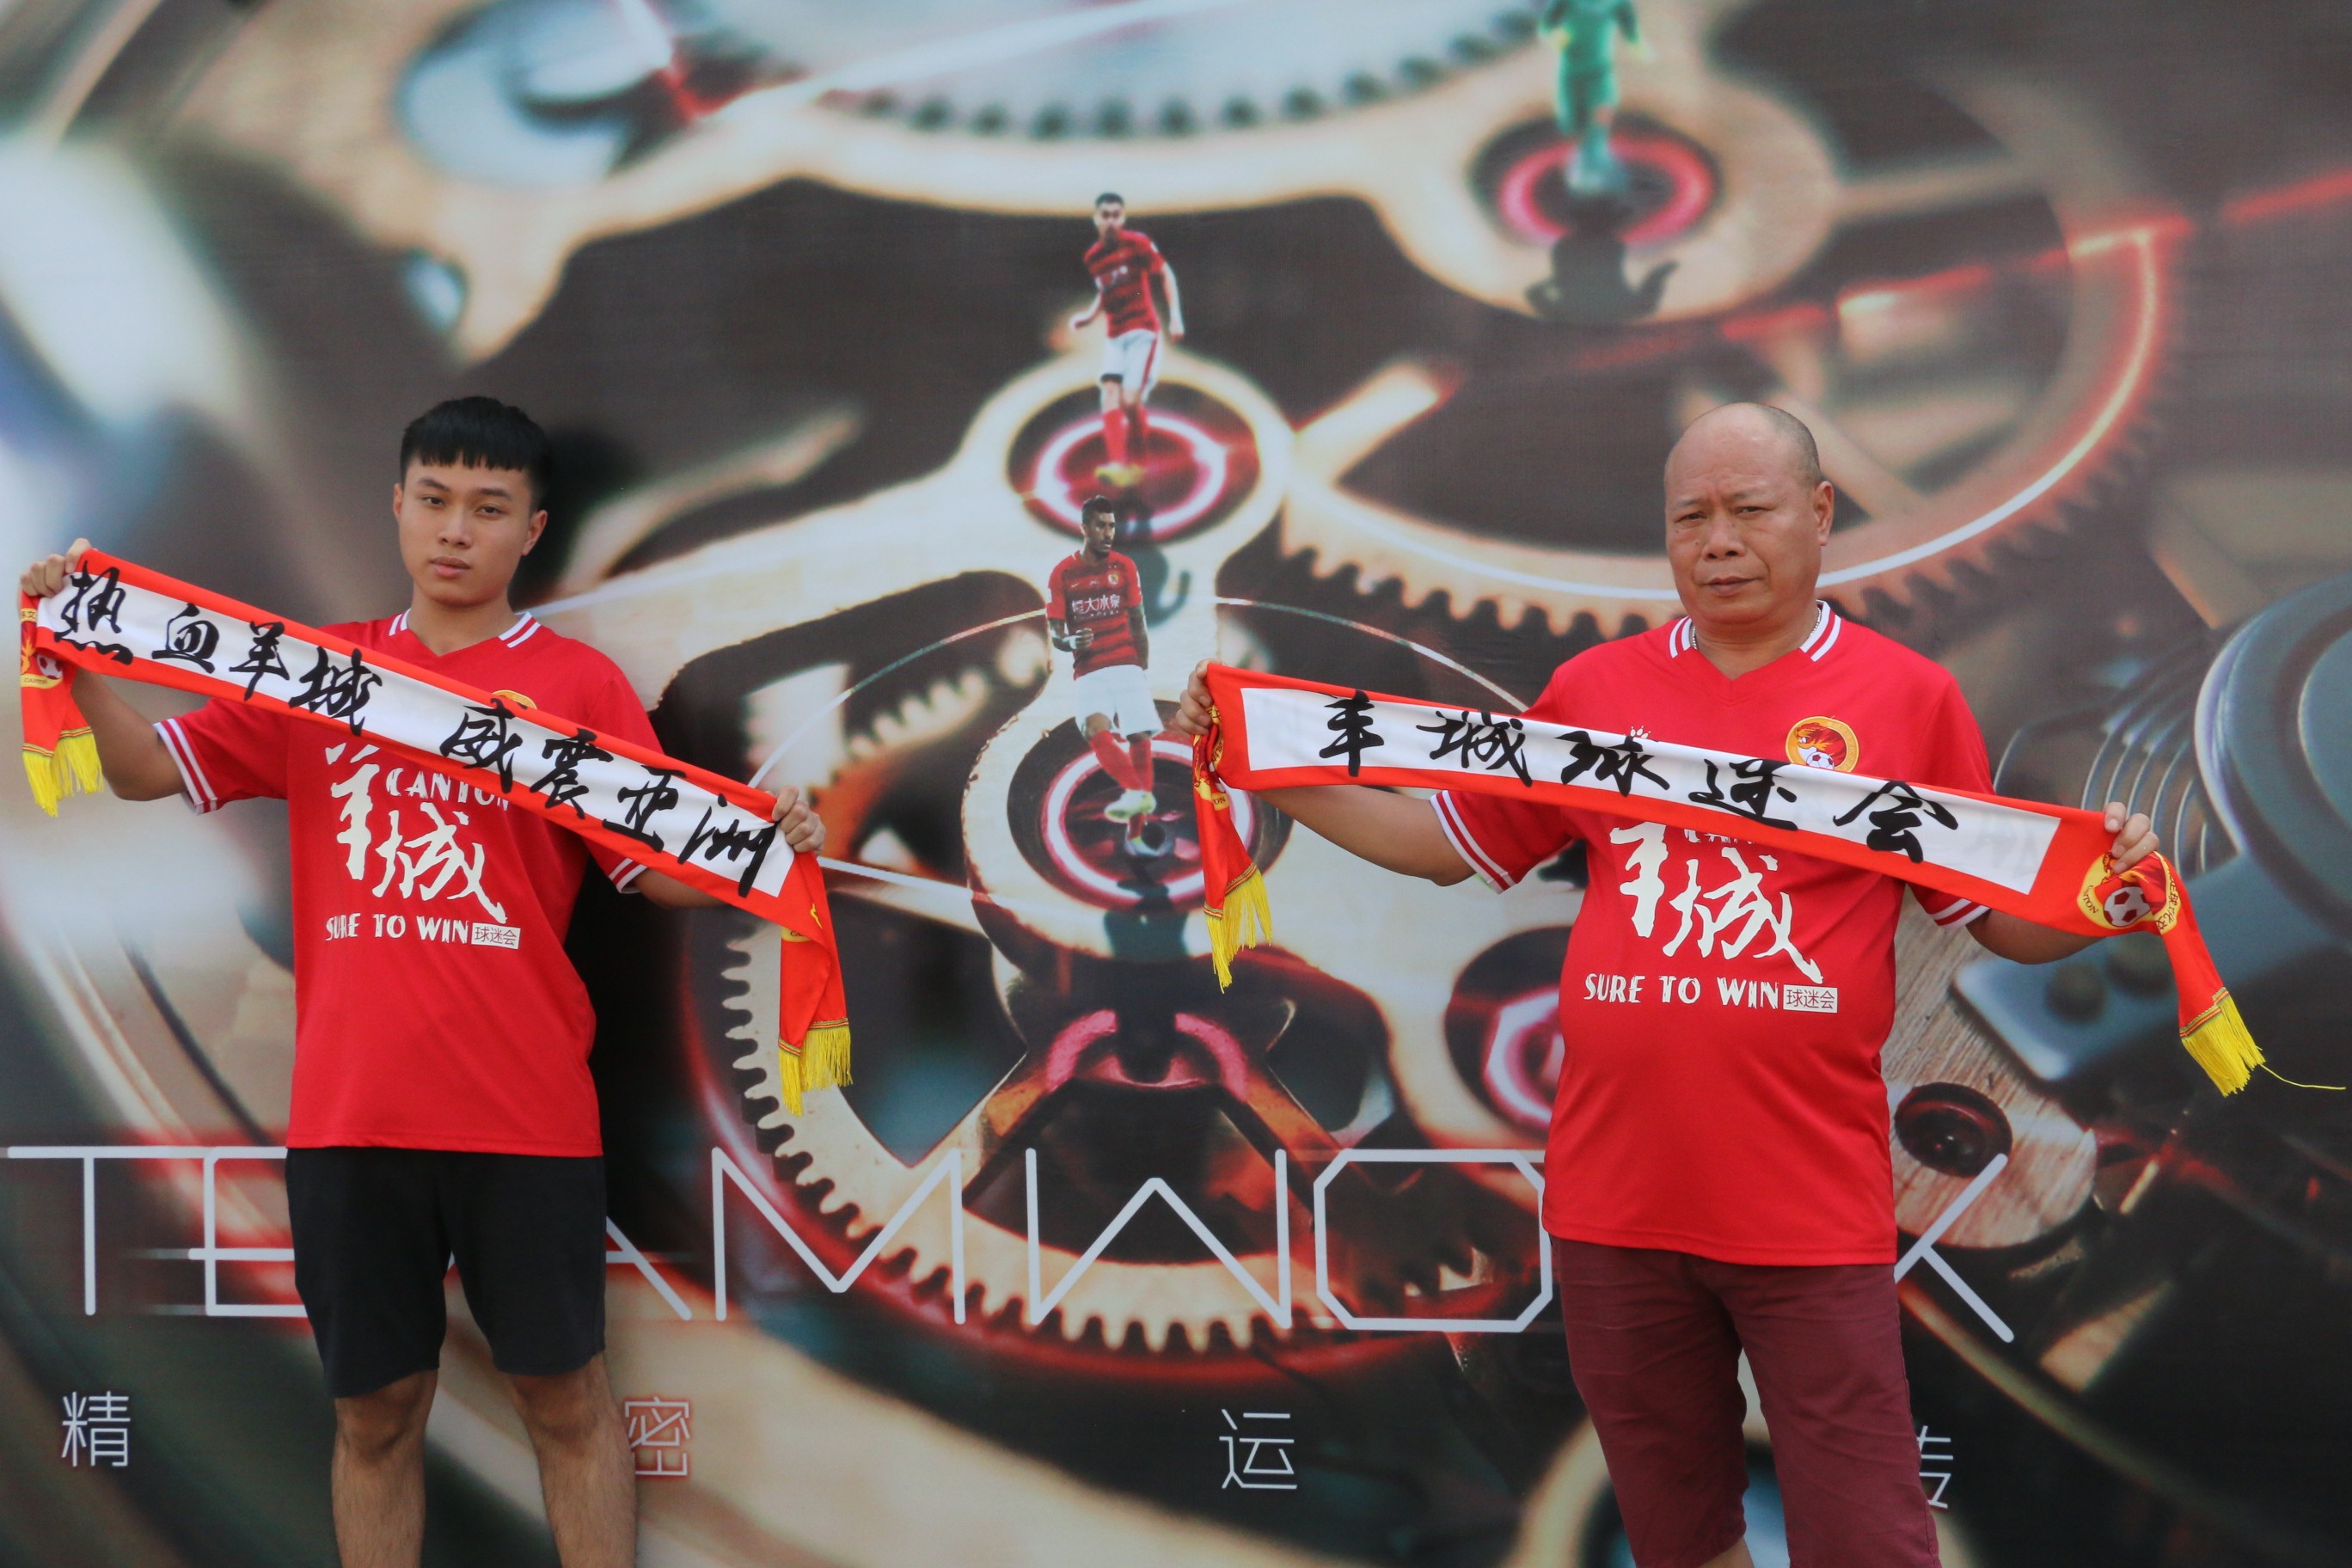 分享一对球迷父子追随广州队的故事,增进沟通